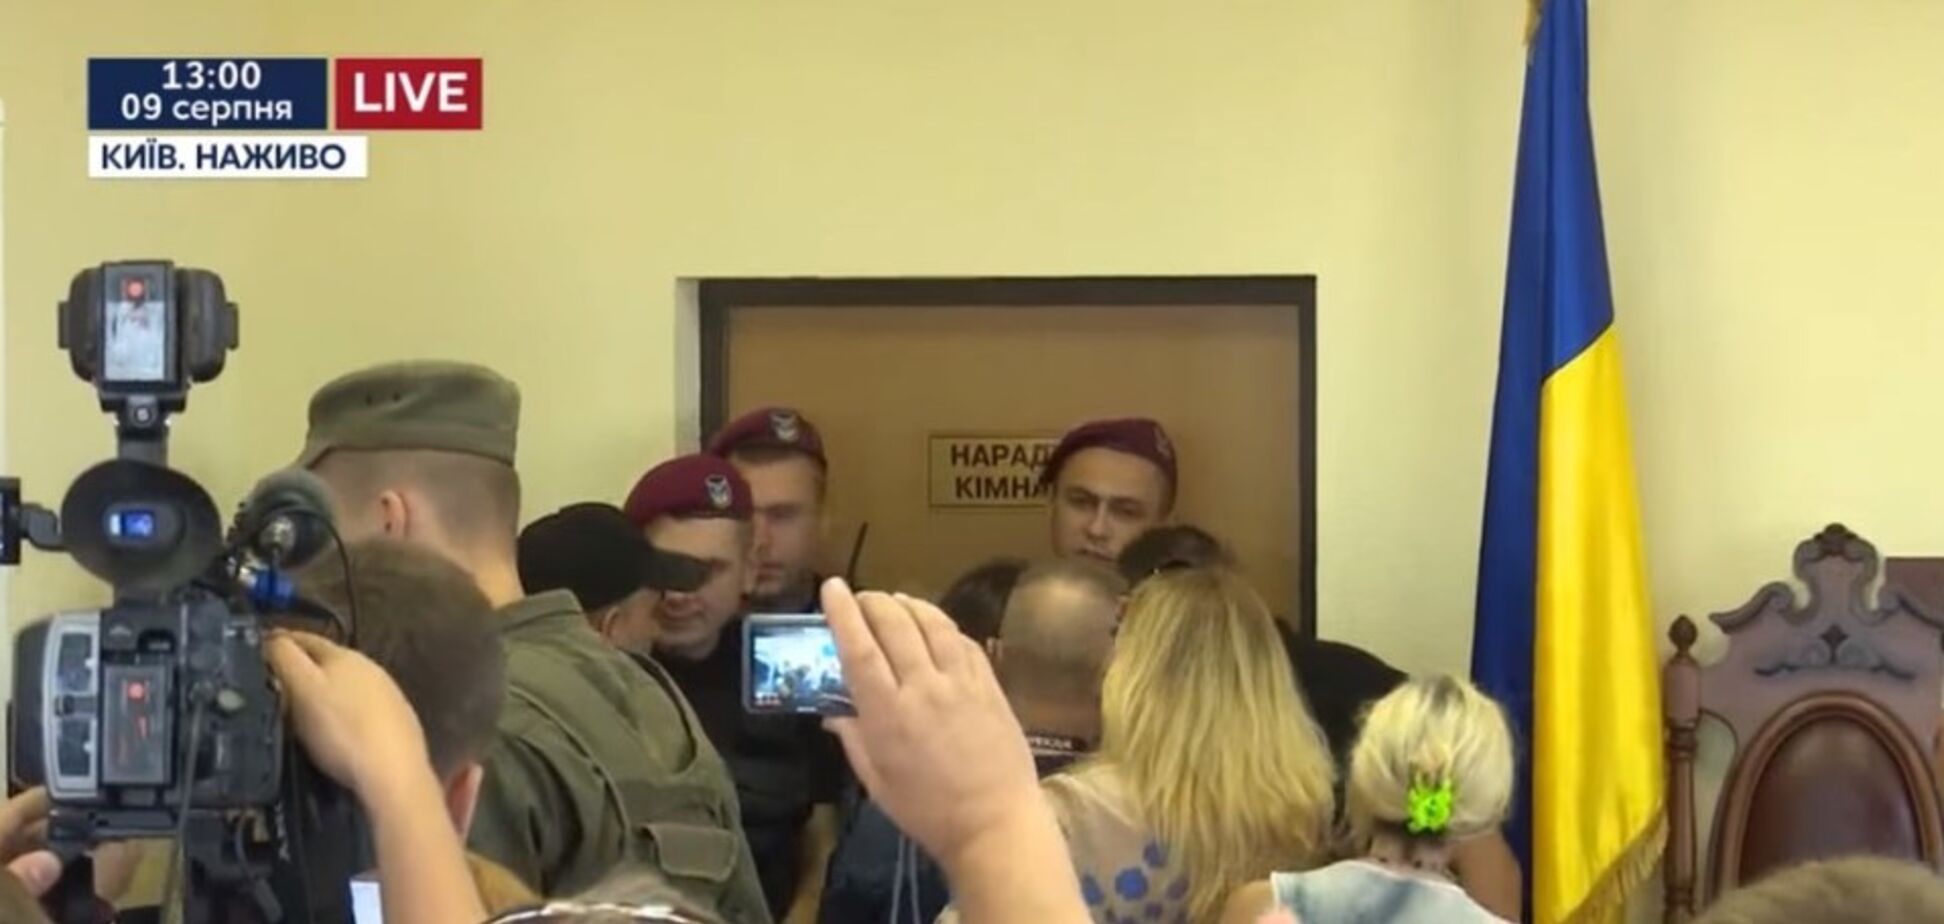 'Скотиняка!' У суді над Савченко відбулися сутички. Відеофакт